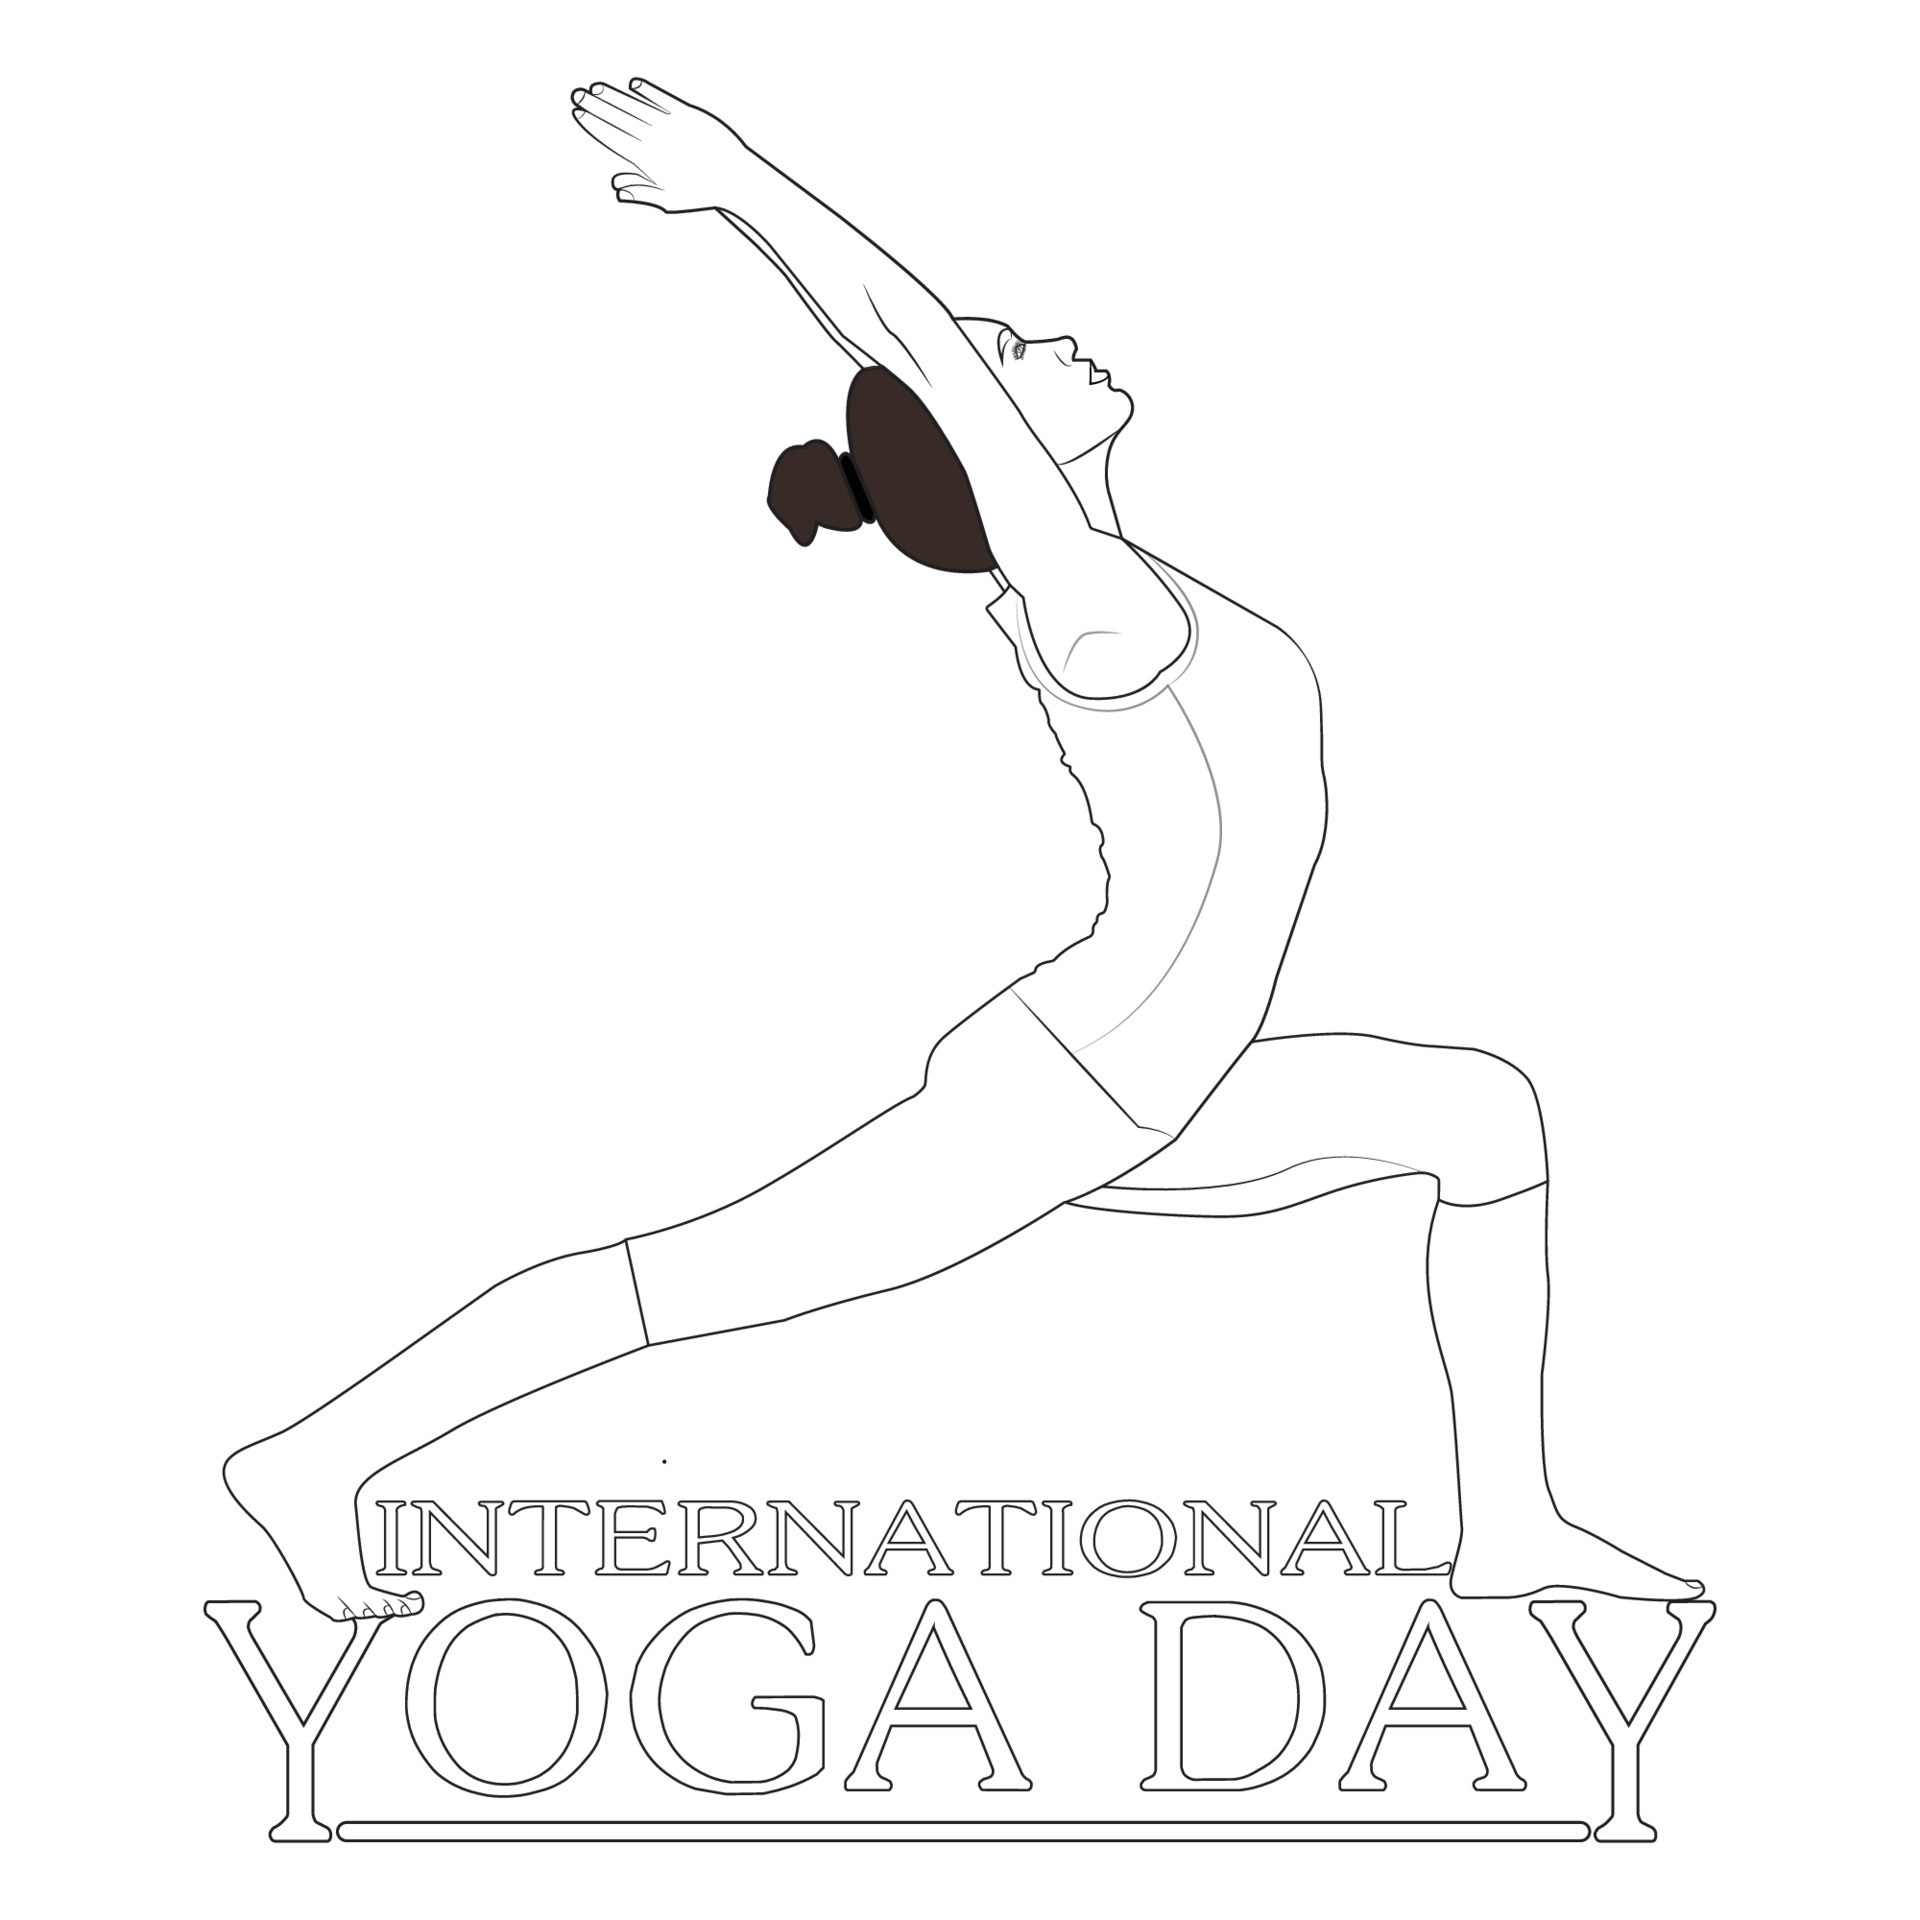 International Yoga Day on 21st June 7486496 Vector Art at Vecteezy